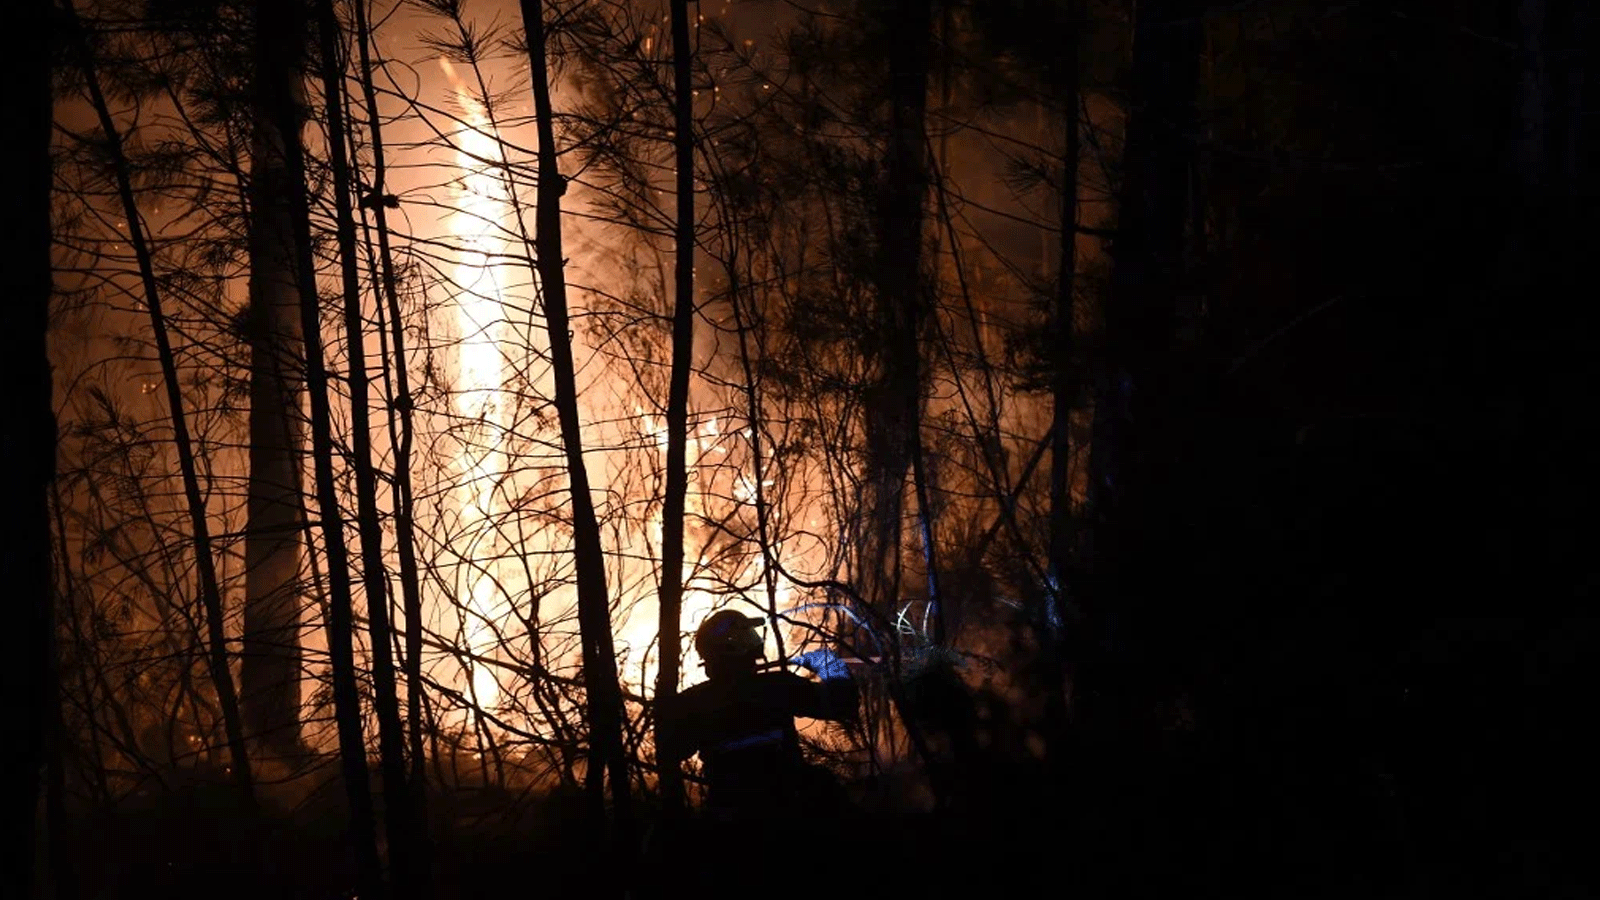 رجال الإطفاء يكافحون لإخماد حريق غابات بالقرب من بيسيغ، جنوب فرنسا، في 7 يوليو / تموز 2022.